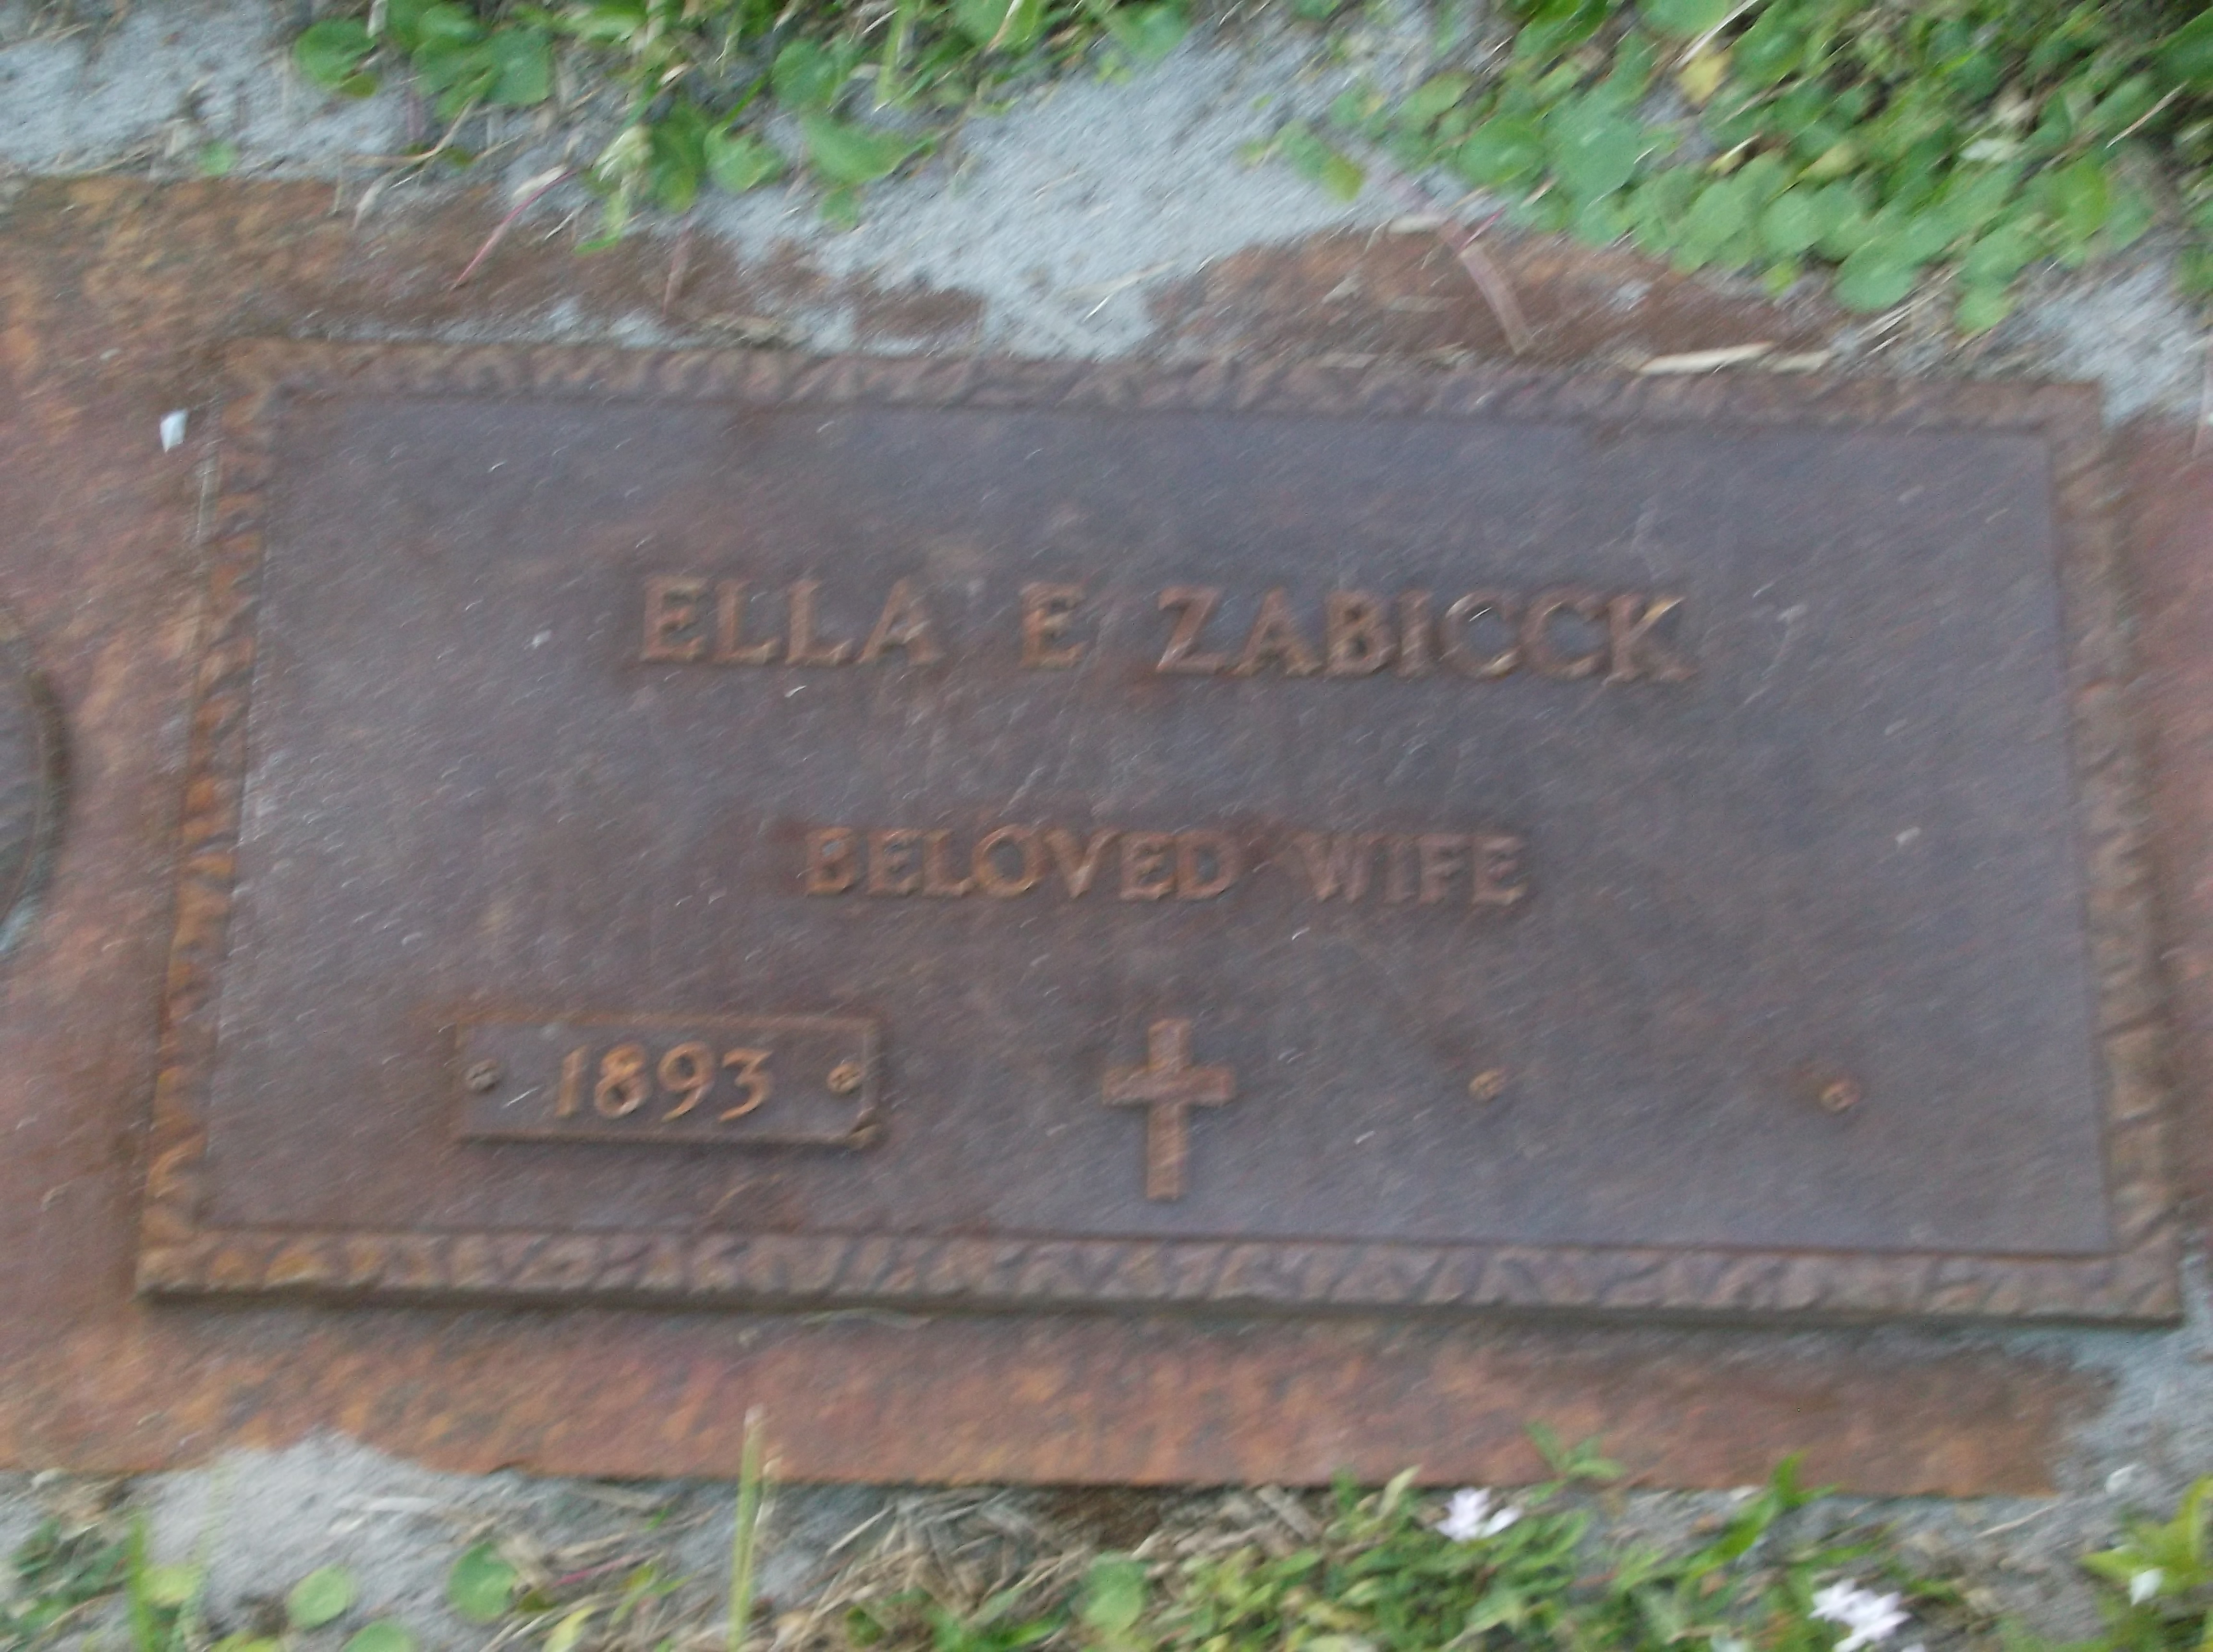 Ella E Zabicck